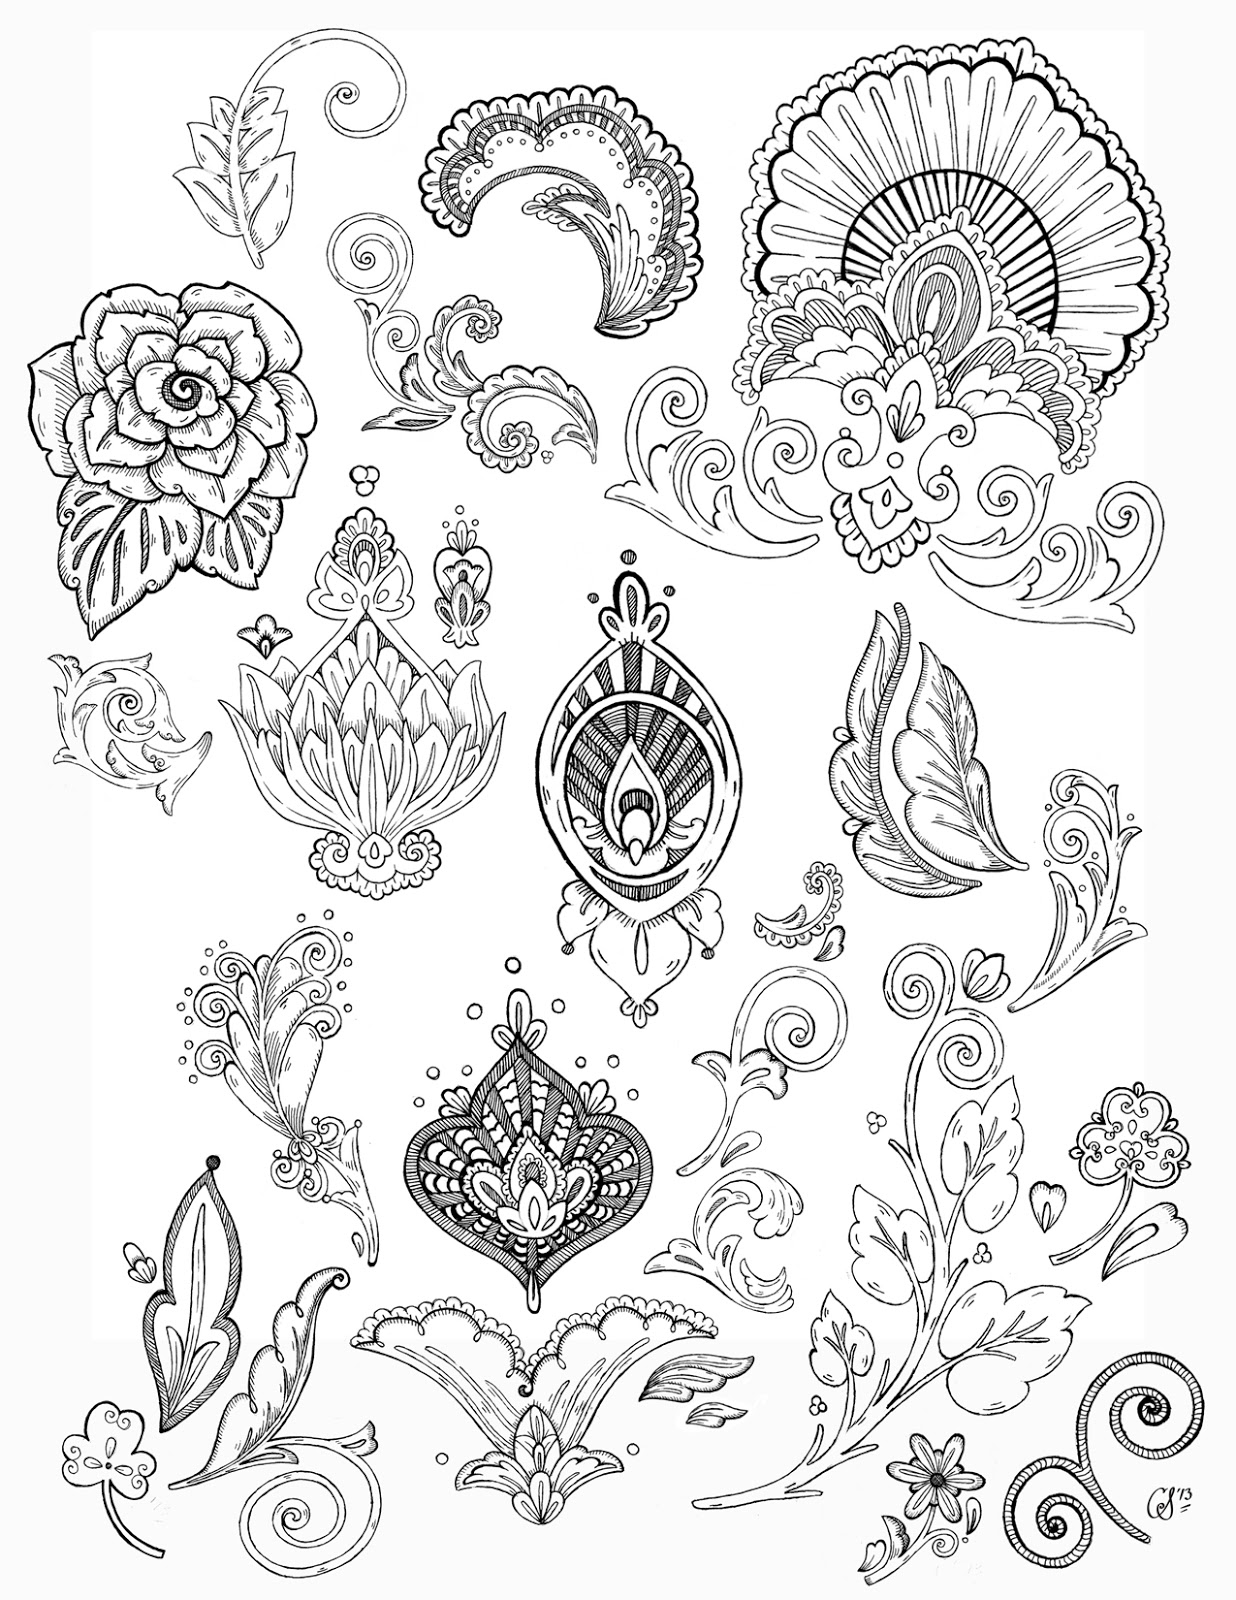 Christina Skapriwsky Illustration: Pen and Ink Florals